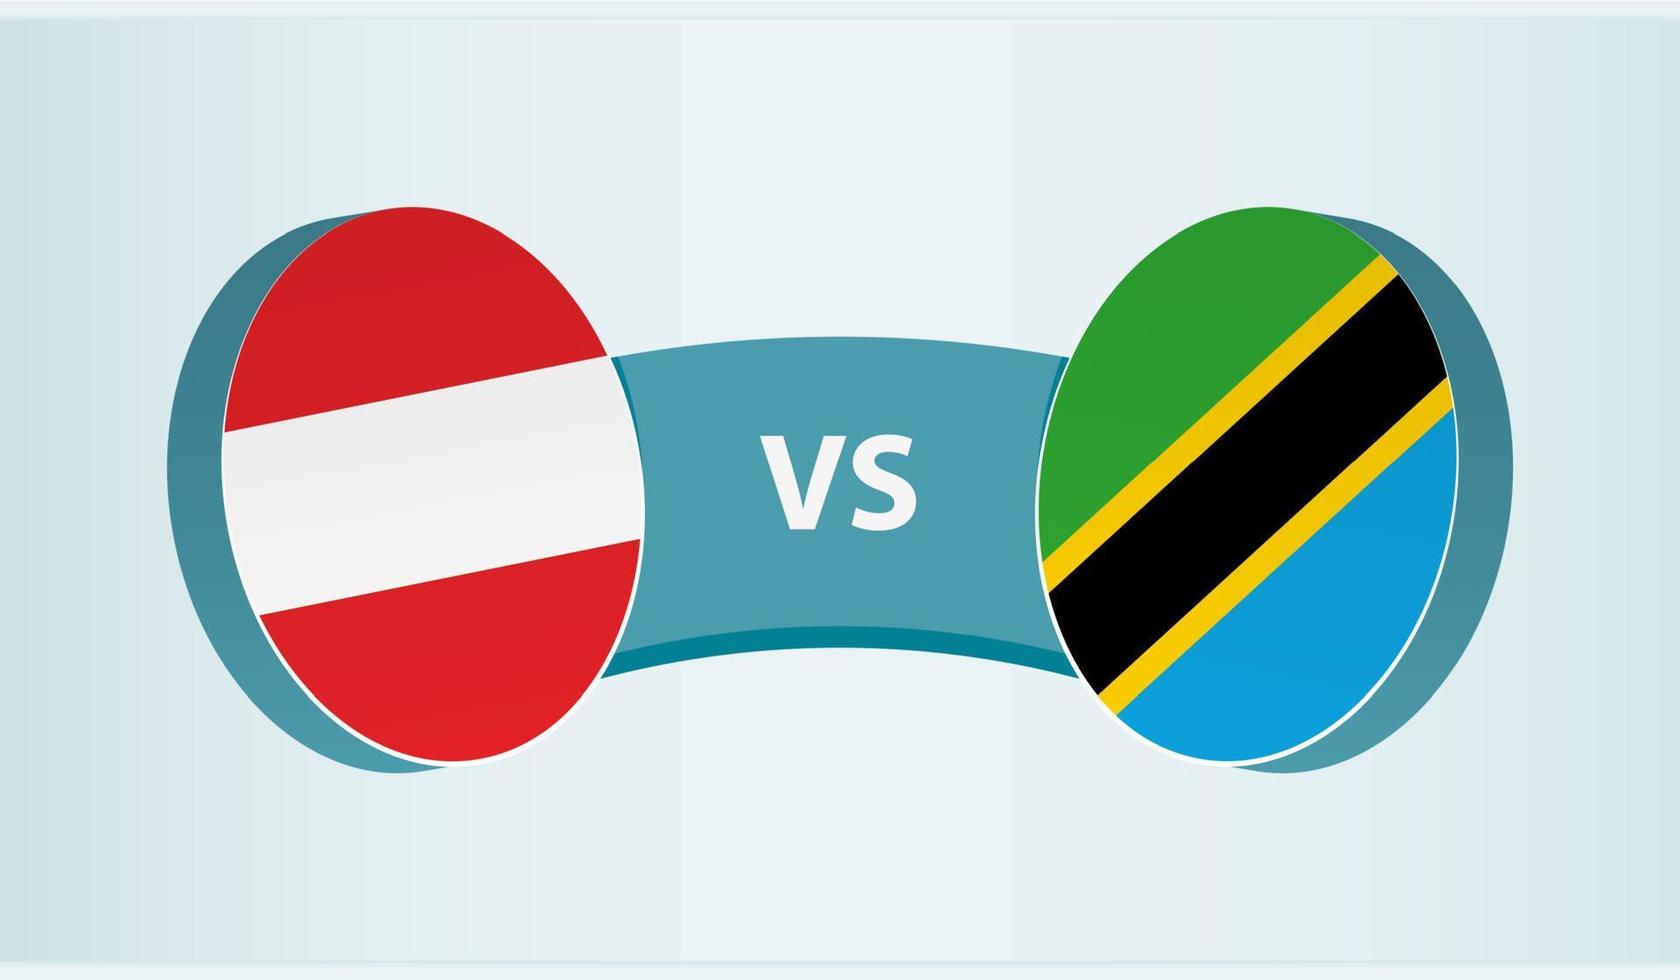 österrike mot tanzania, team sporter konkurrens begrepp. vektor